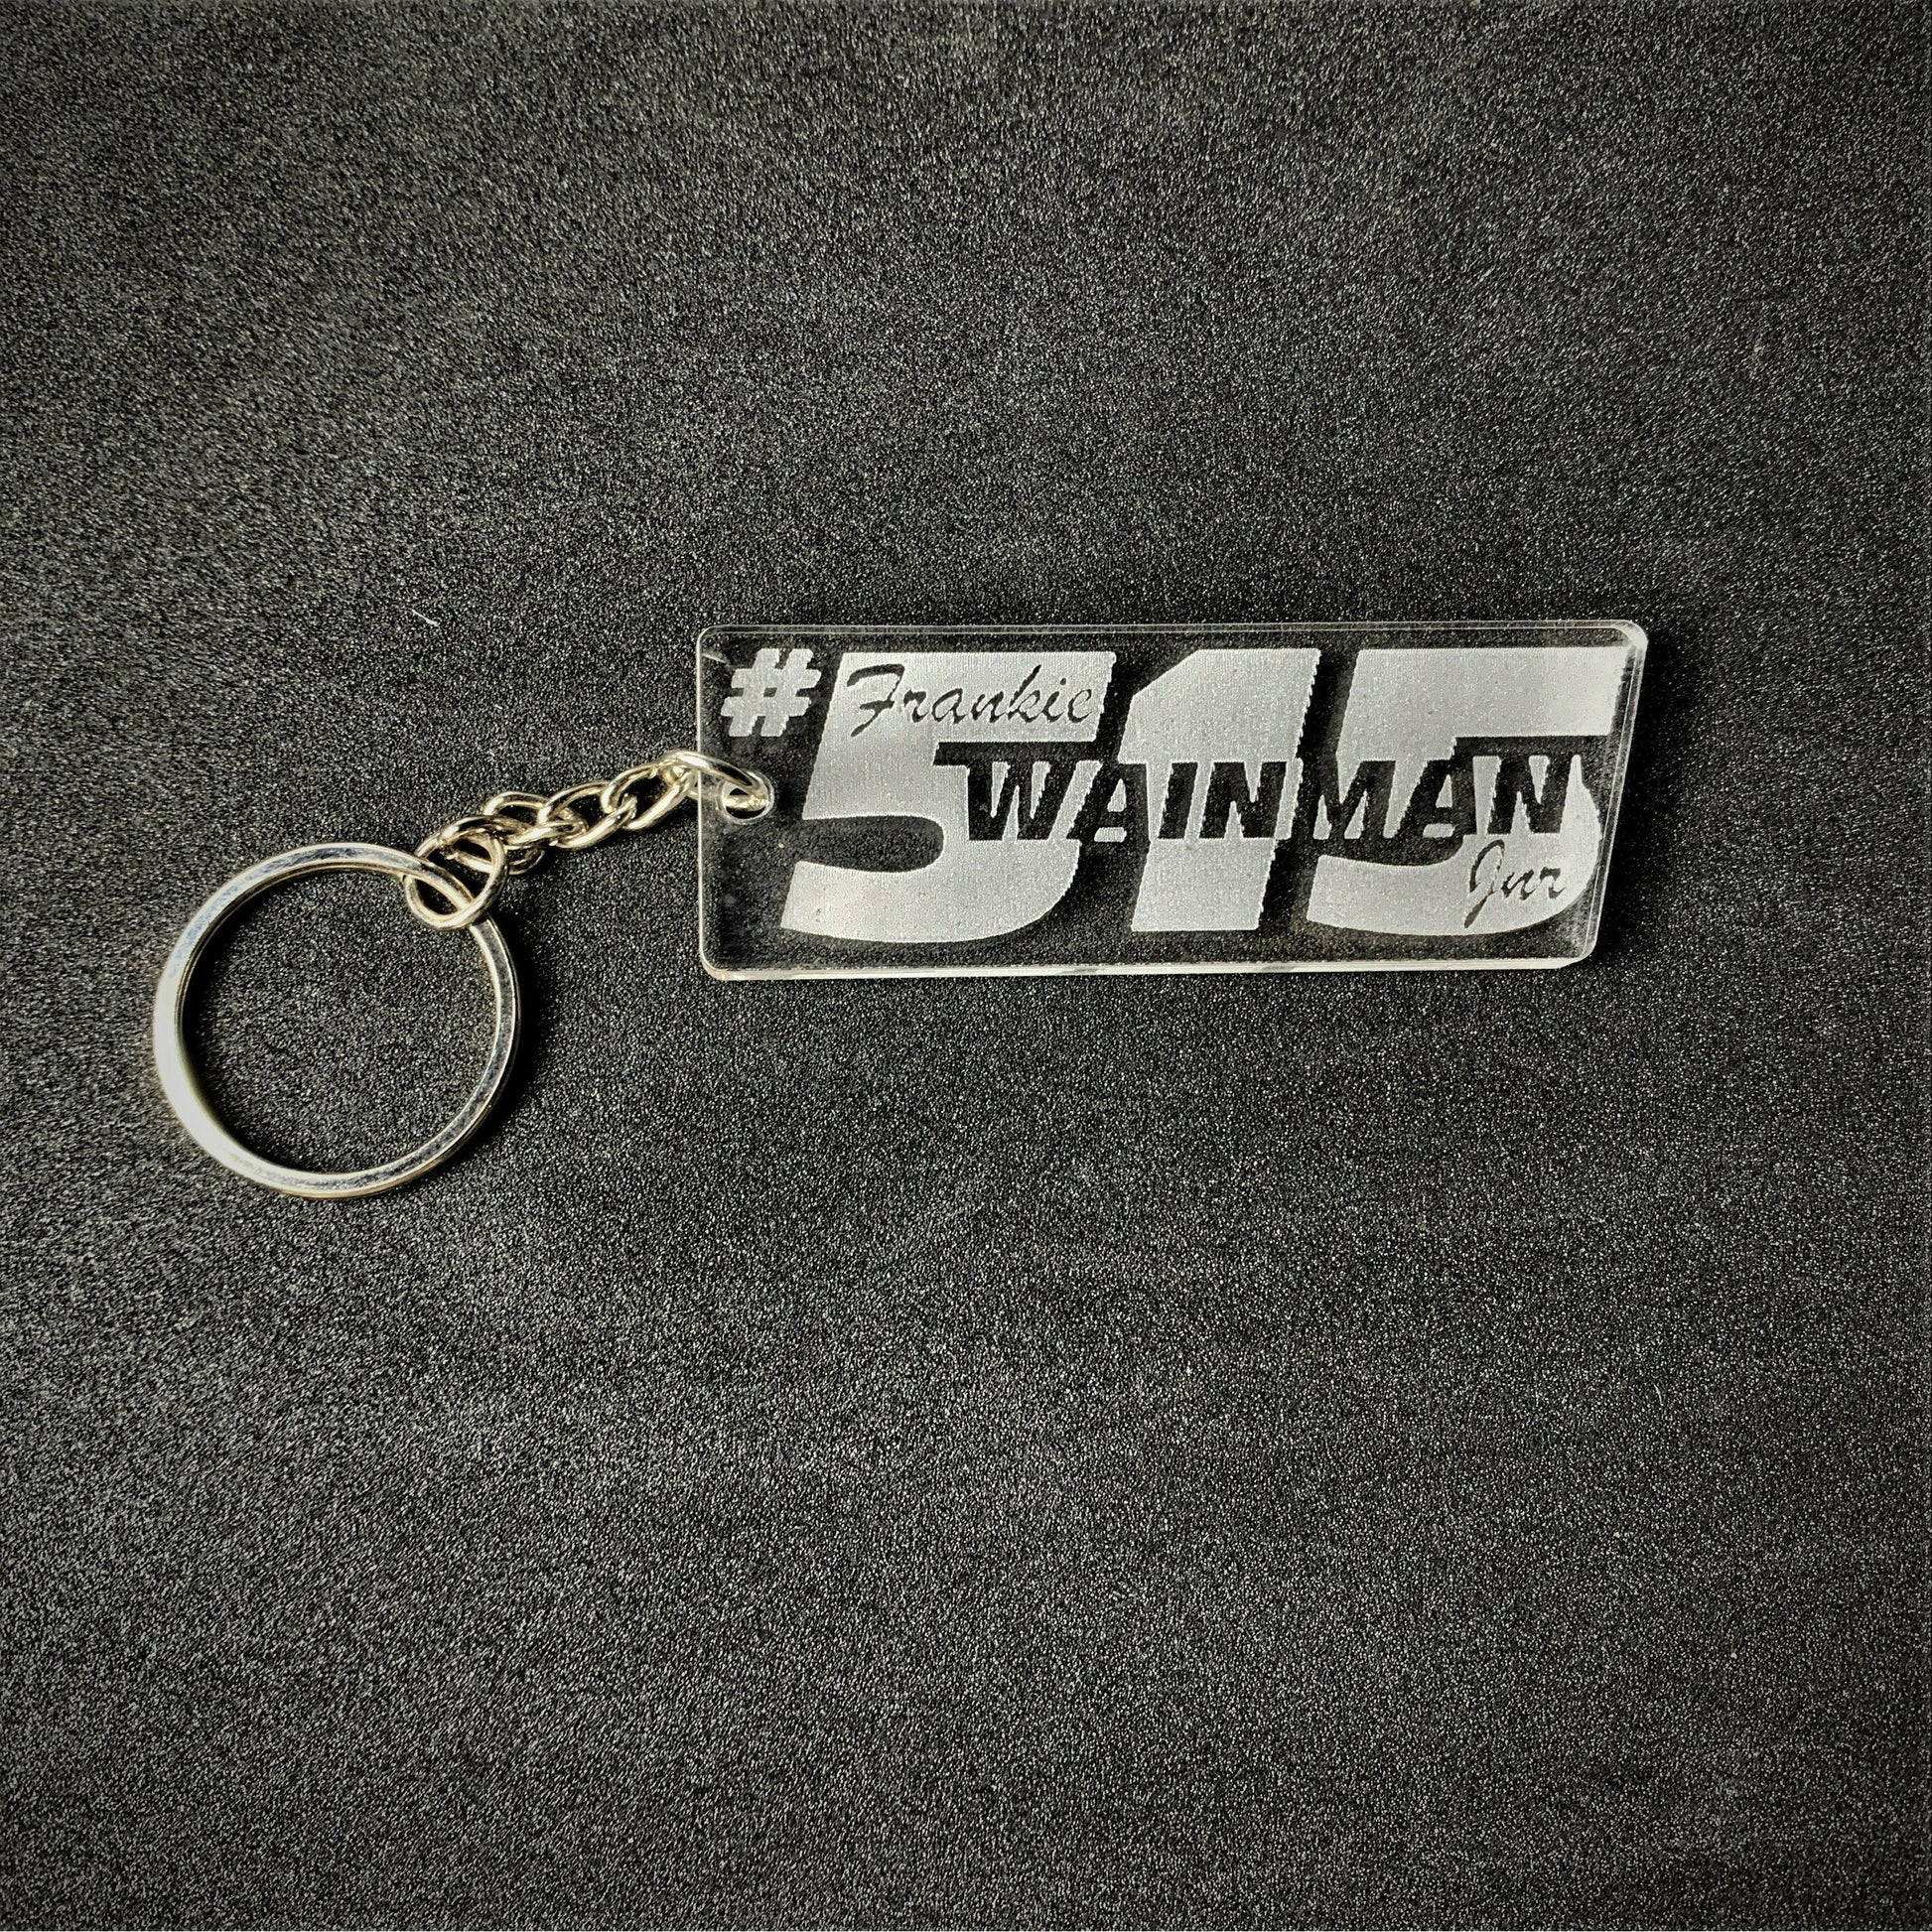 #515 FWJ Key Ring - Key Ring - Stock Car & Banger Toy Tracks